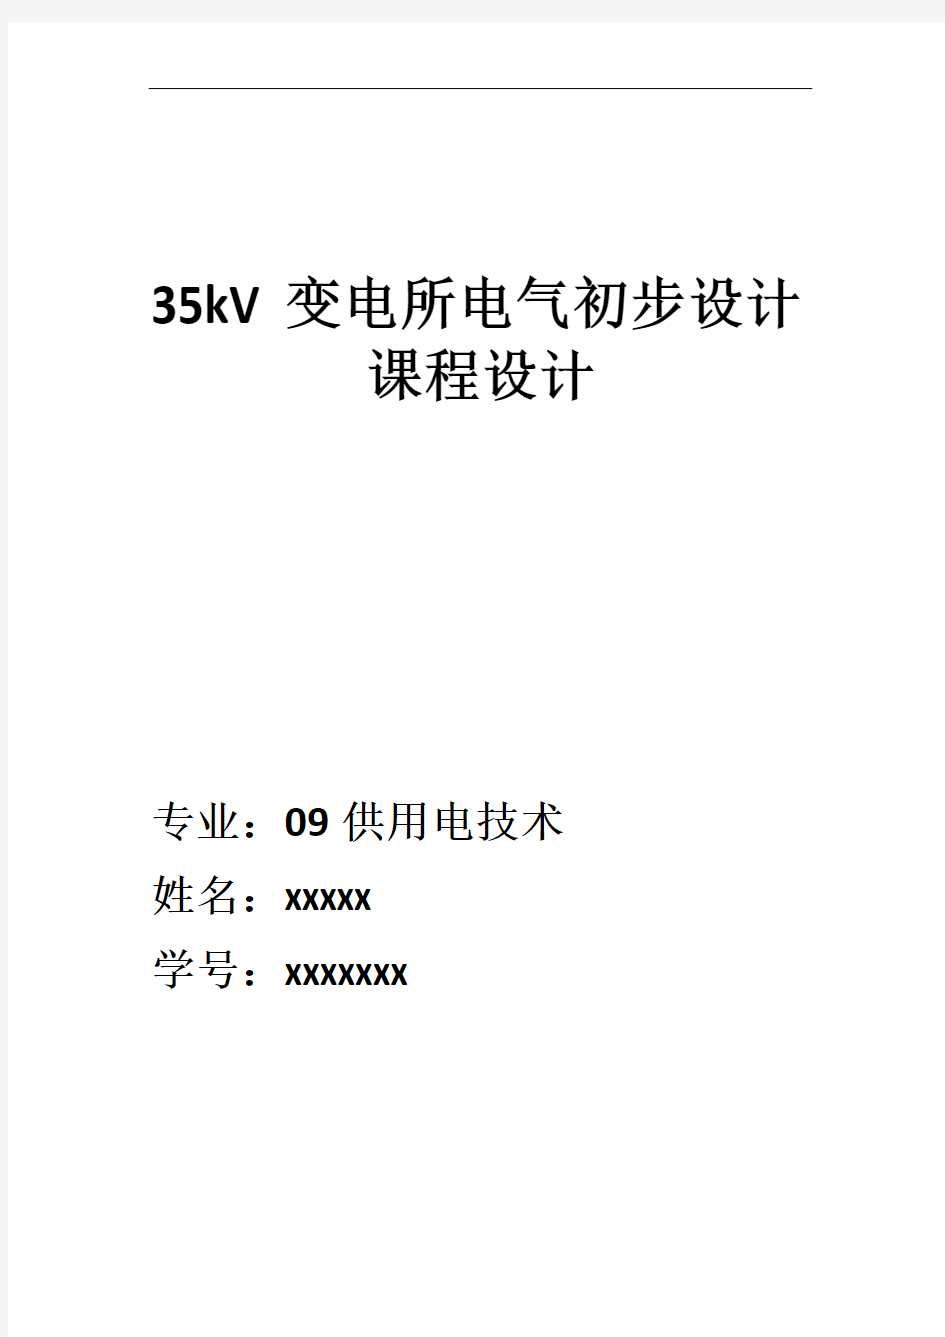 35kV变电所课程设计